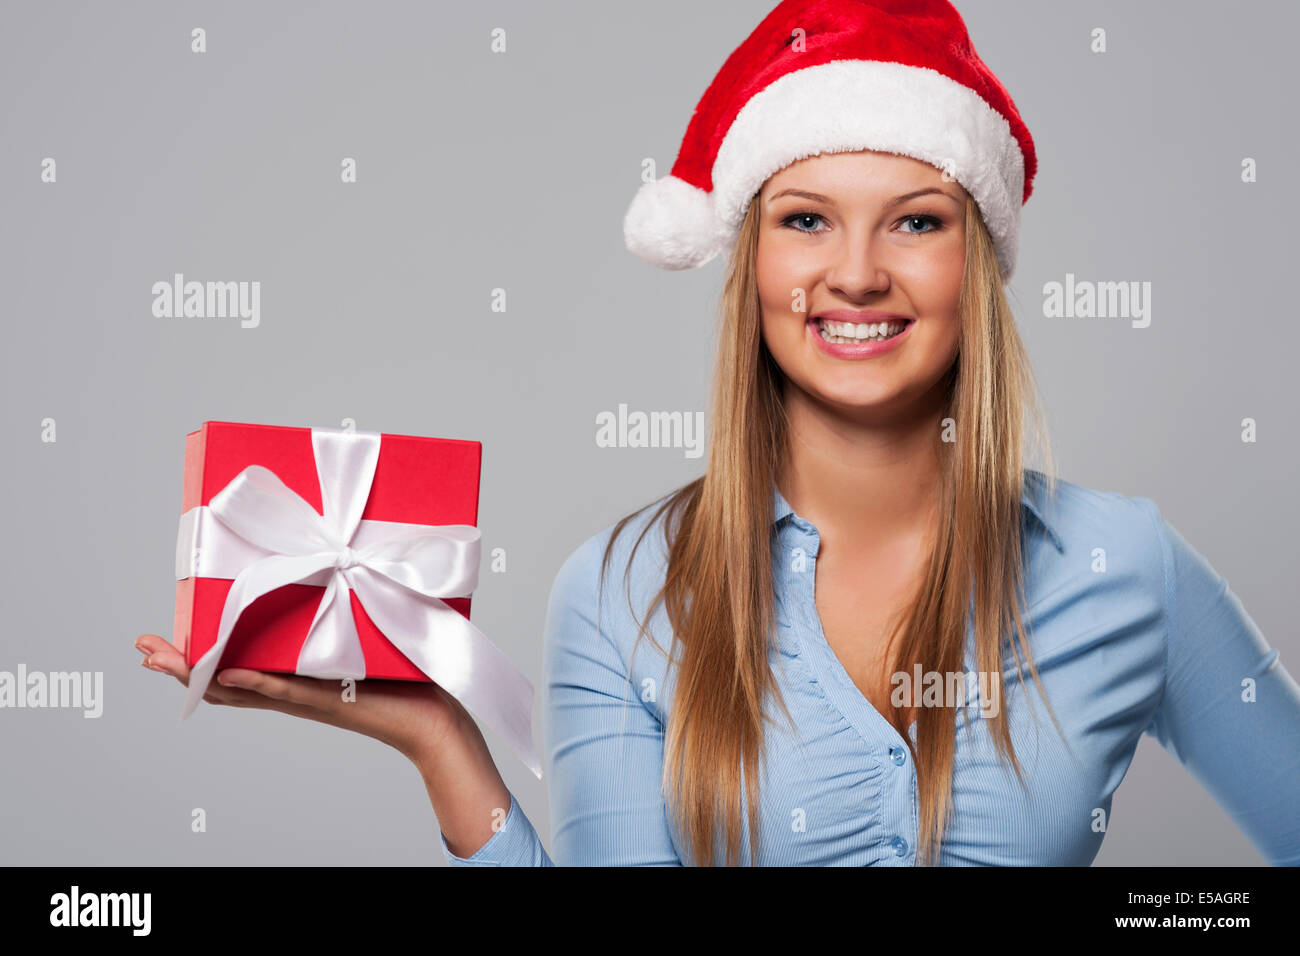 Magnifique Portrait de femme d'affaires de Noël avec cadeaux rouge, Debica, Pologne Banque D'Images